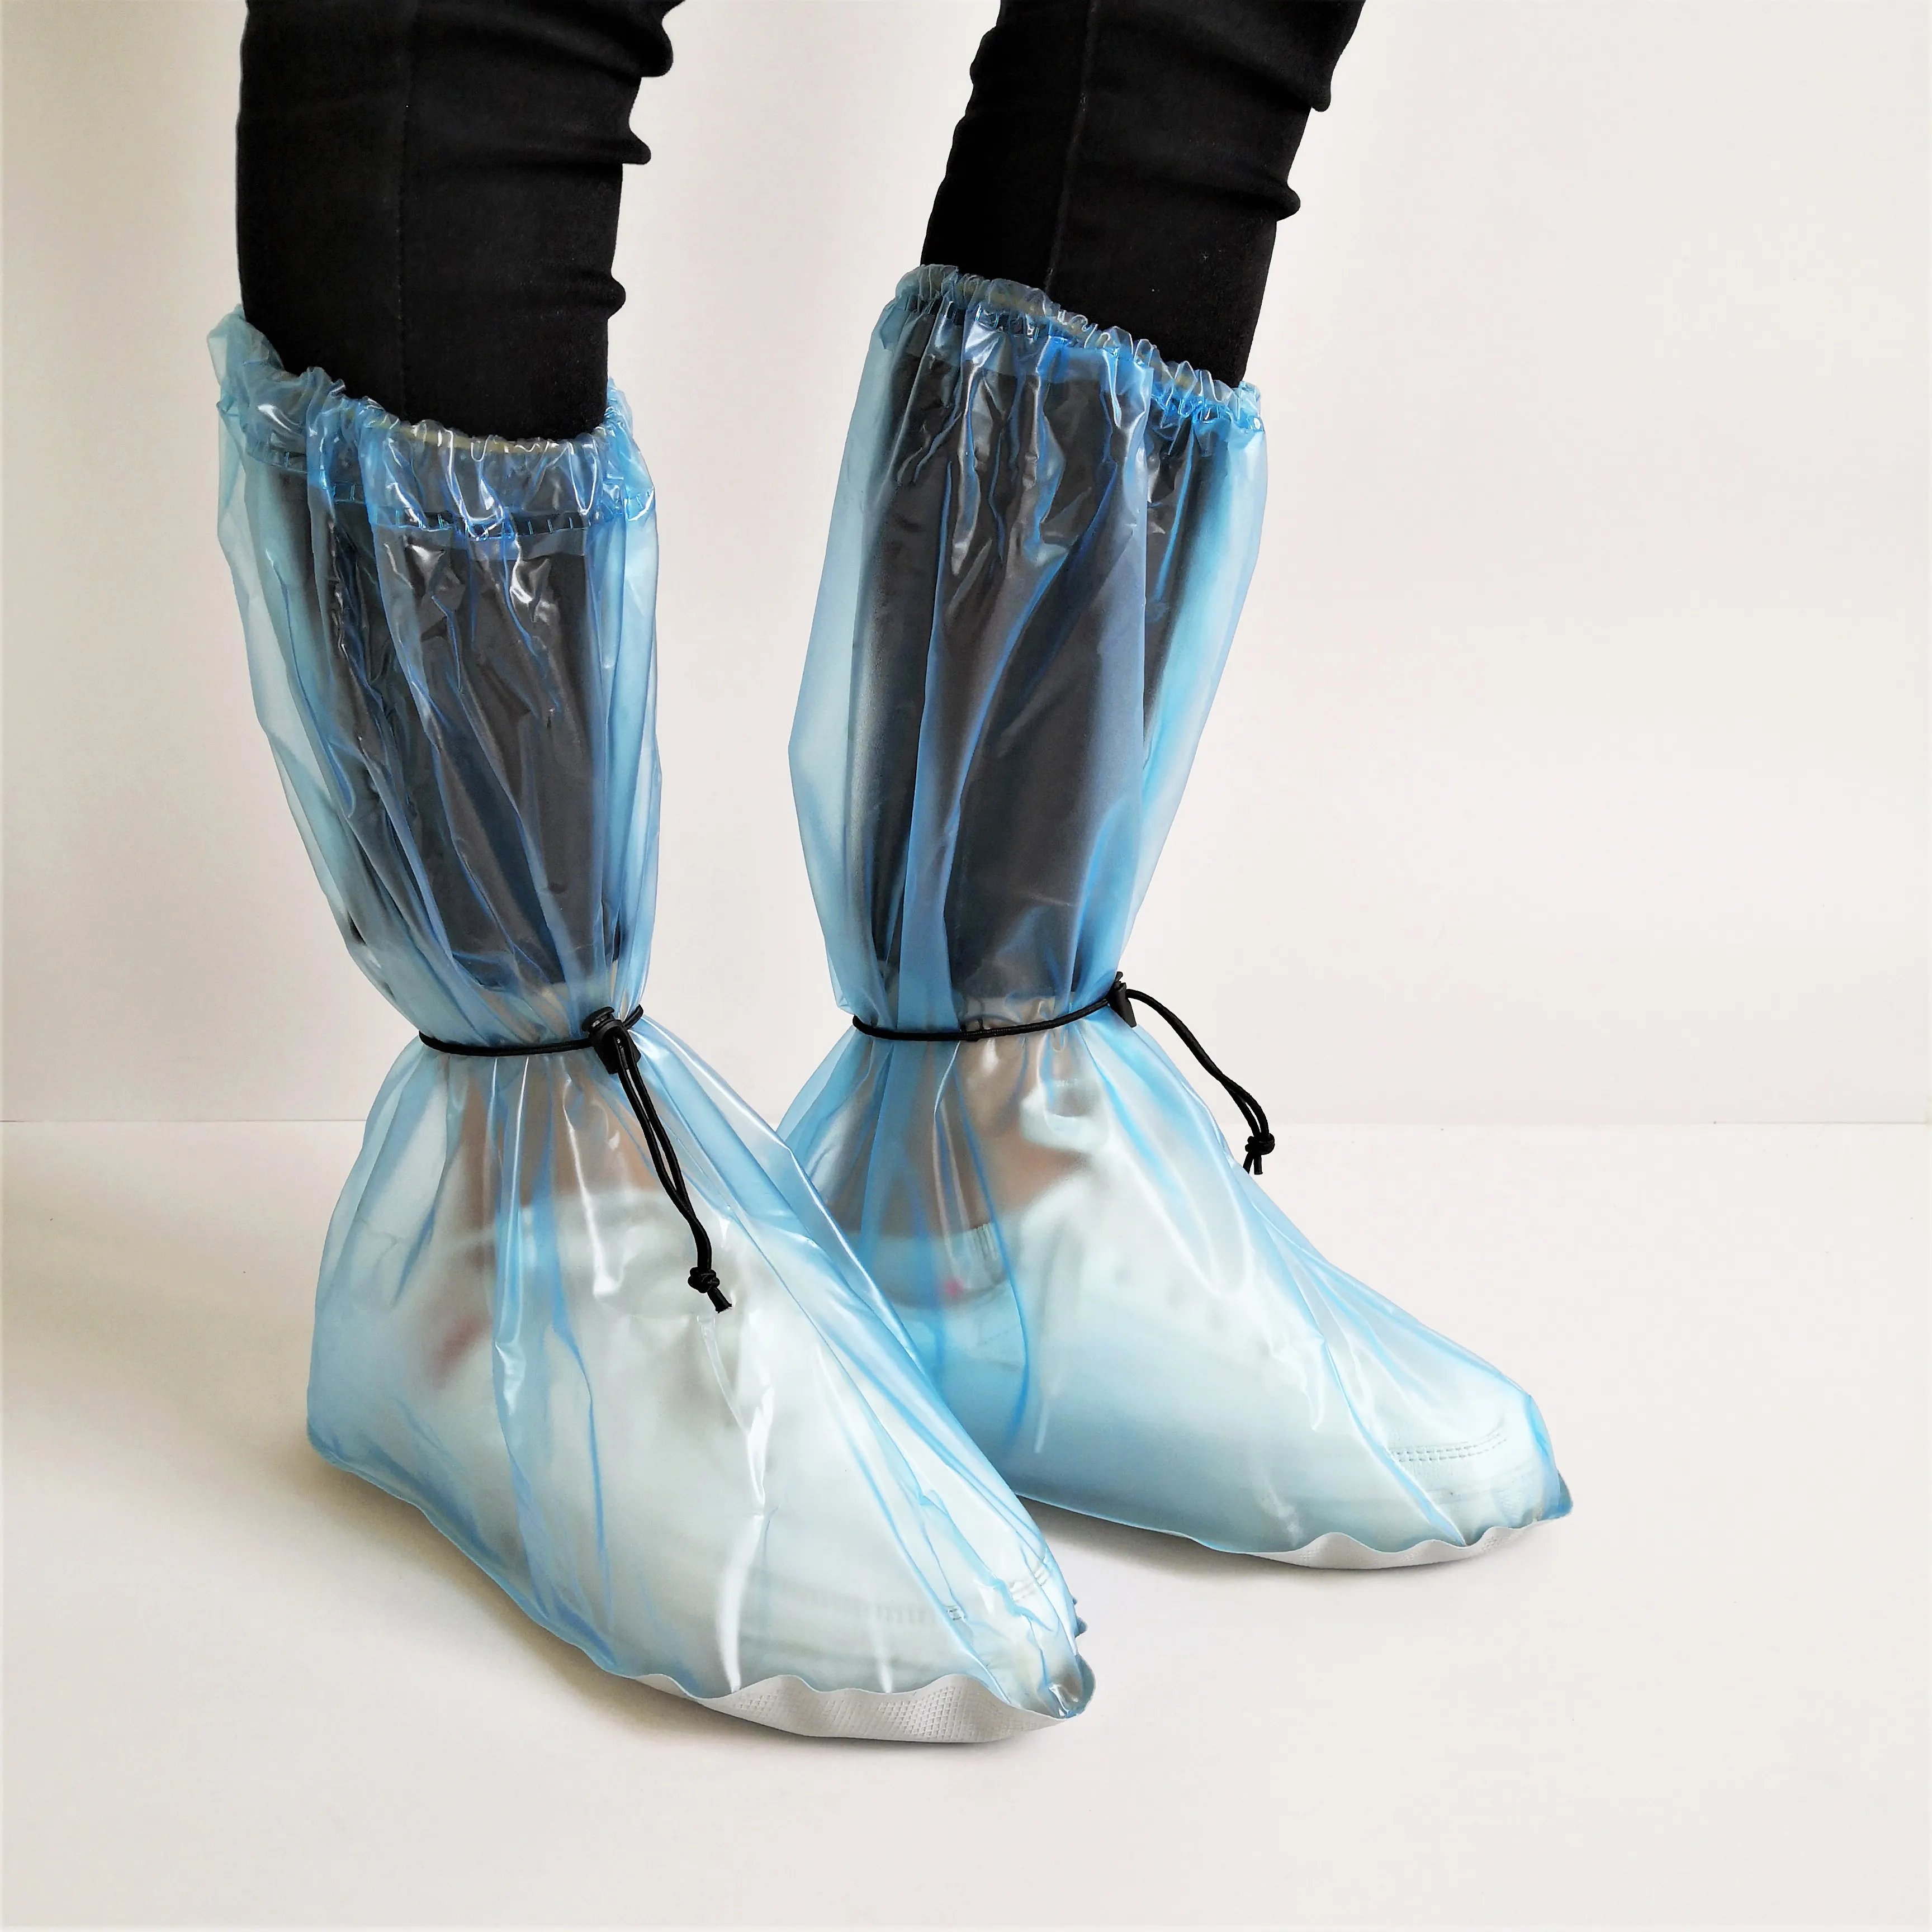 ハイアッパー防水滑り止めブルー再利用可能なゴム靴カバーブーツ男性と女性